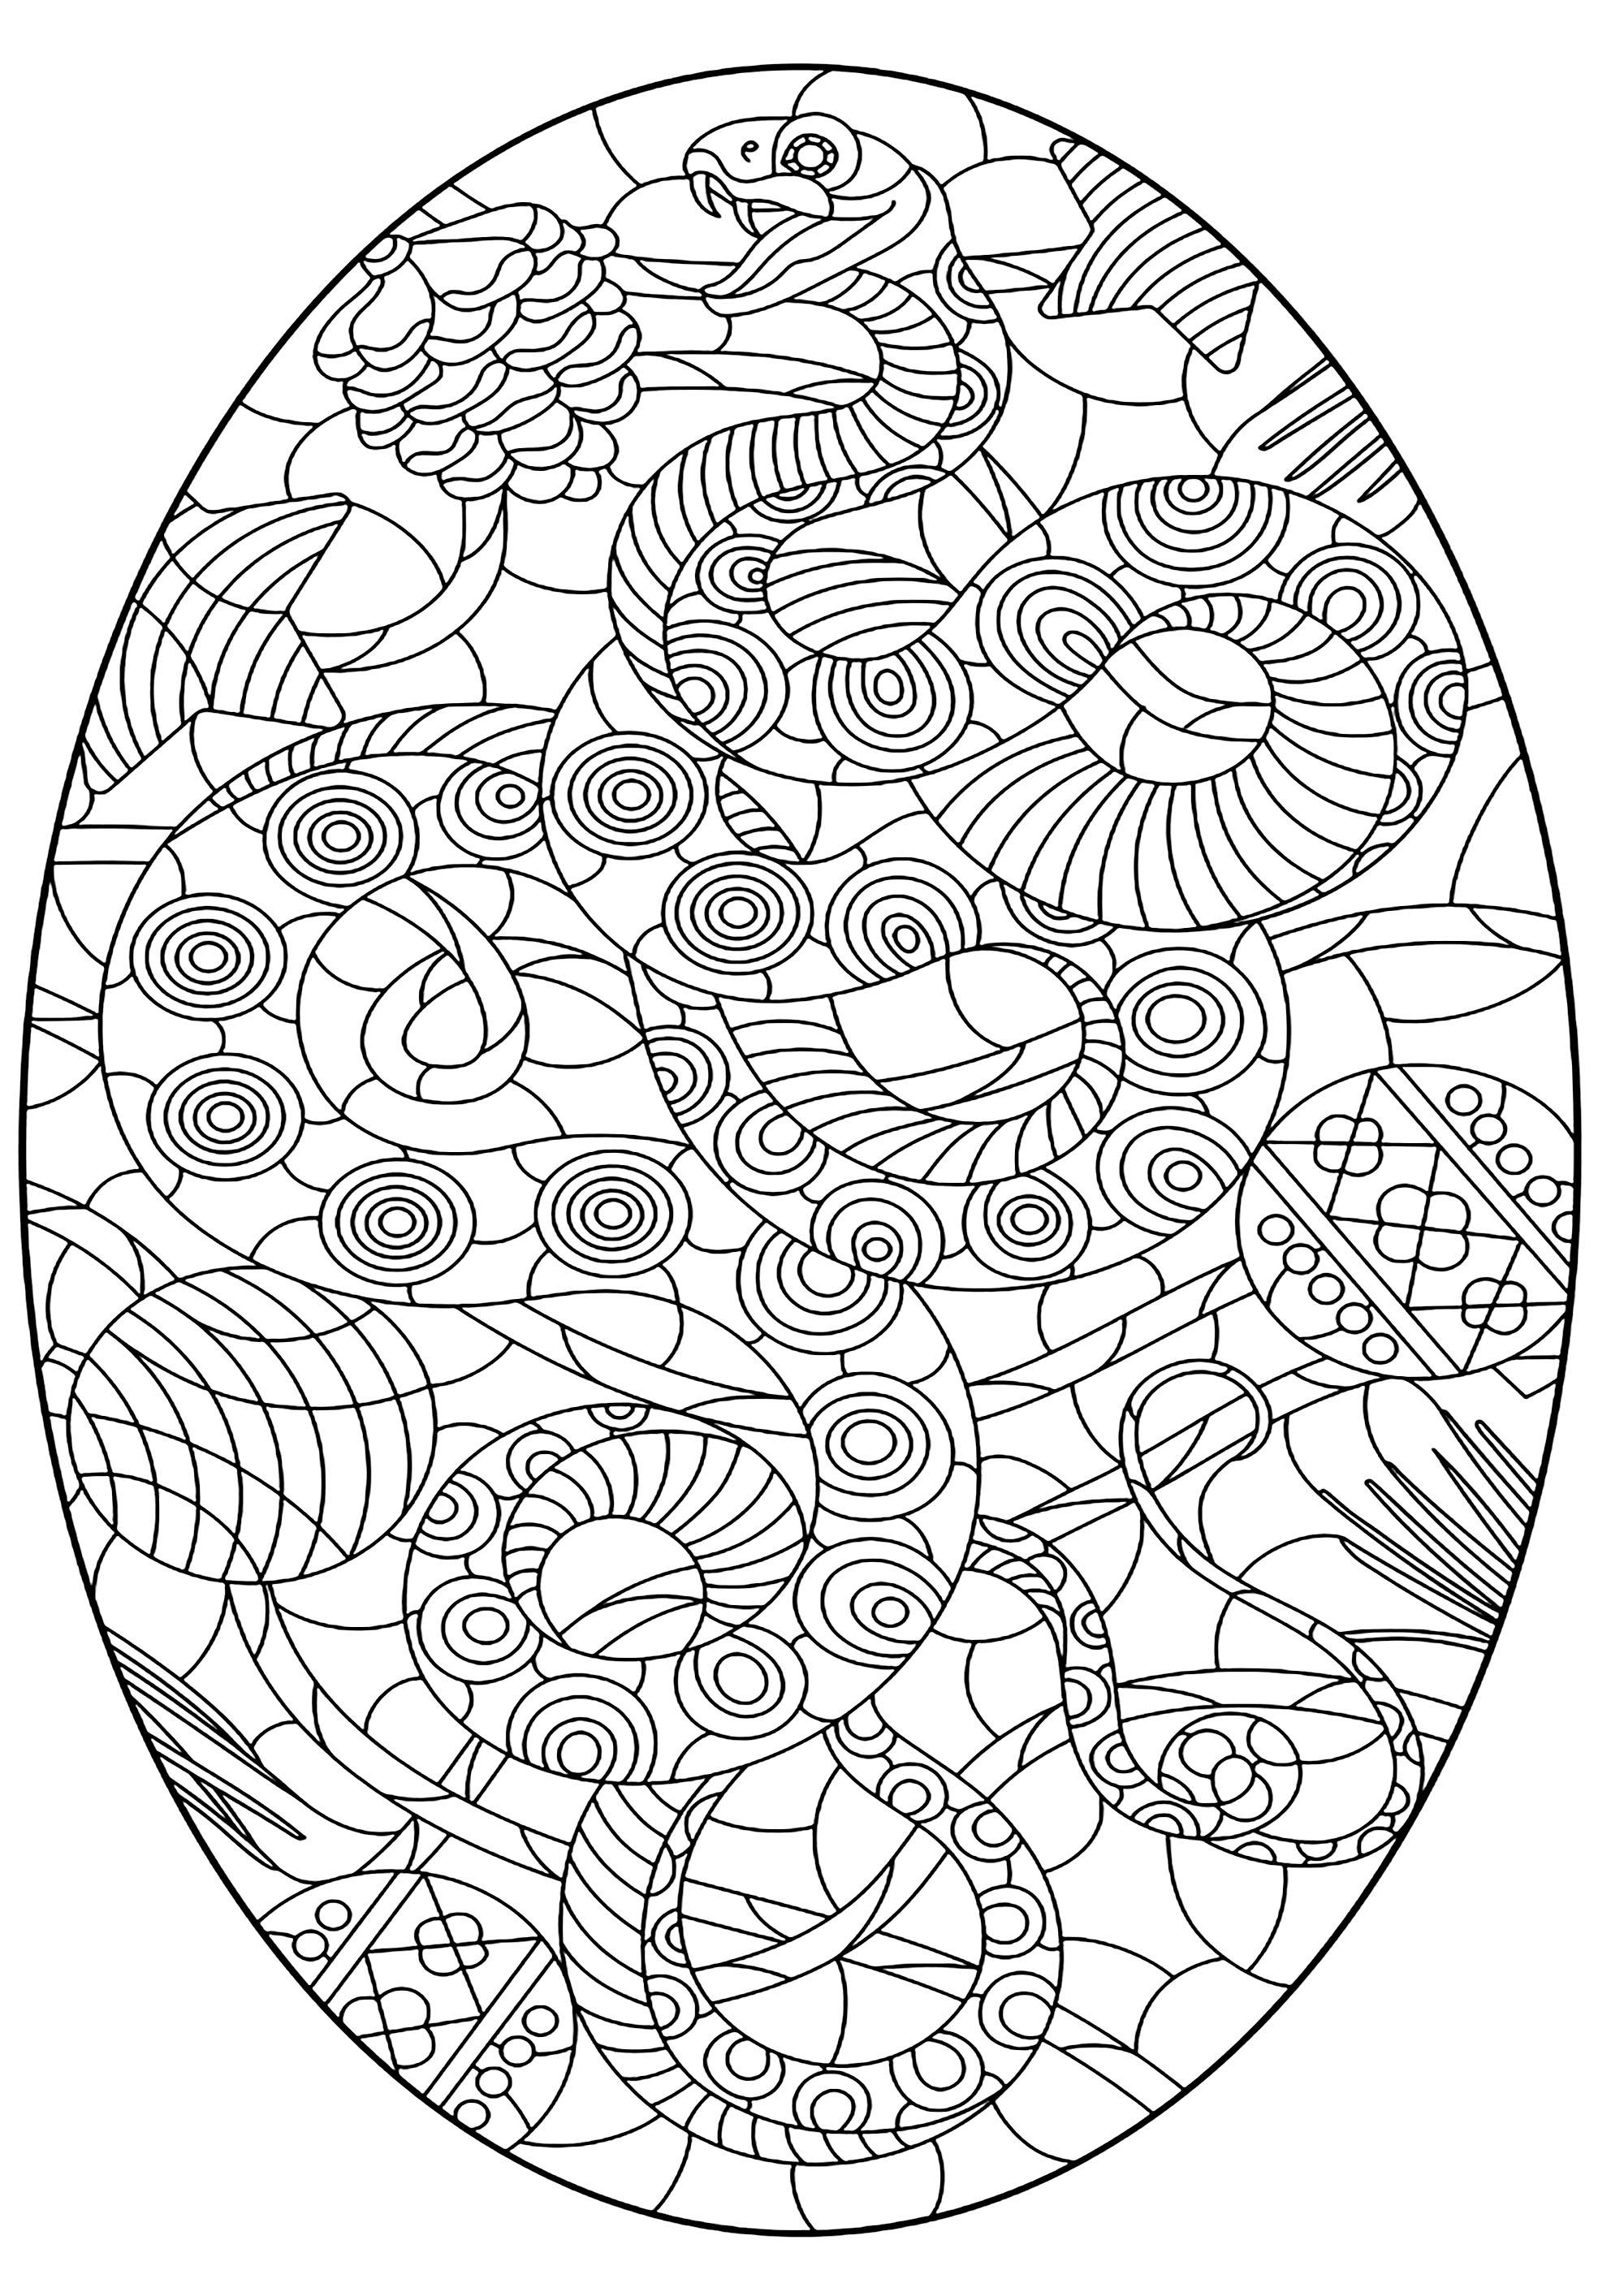 Serpent dans un ovale, avec nombreux motifs. Le serpent et les motifs sont harmonieux et se confondent, Artiste : zagory   Source : 123rf